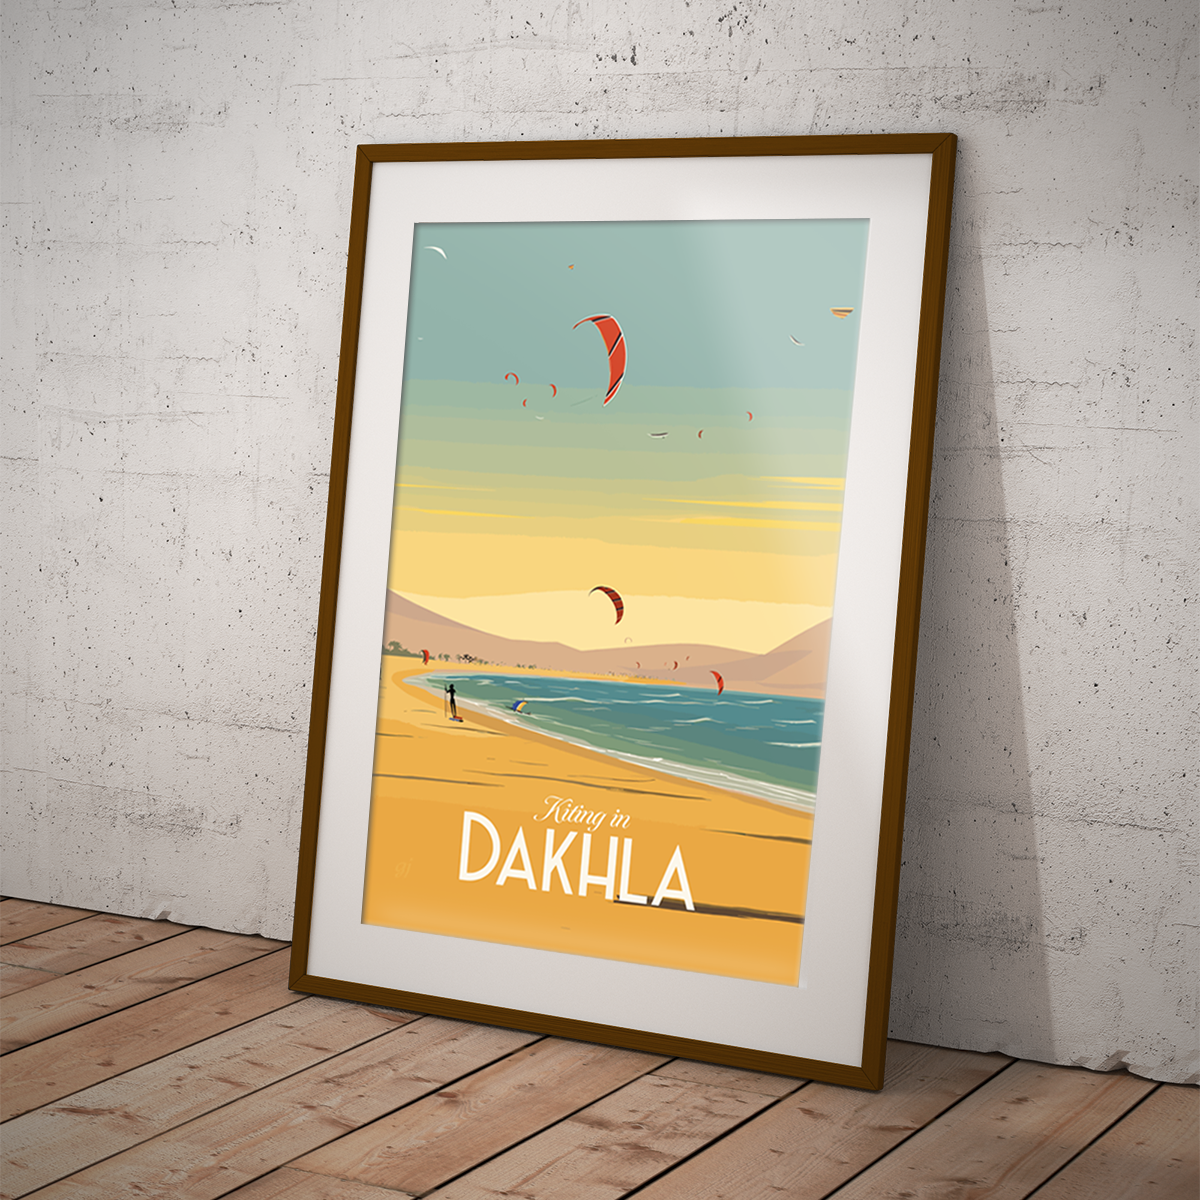 Dakhla poster by bon voyage design